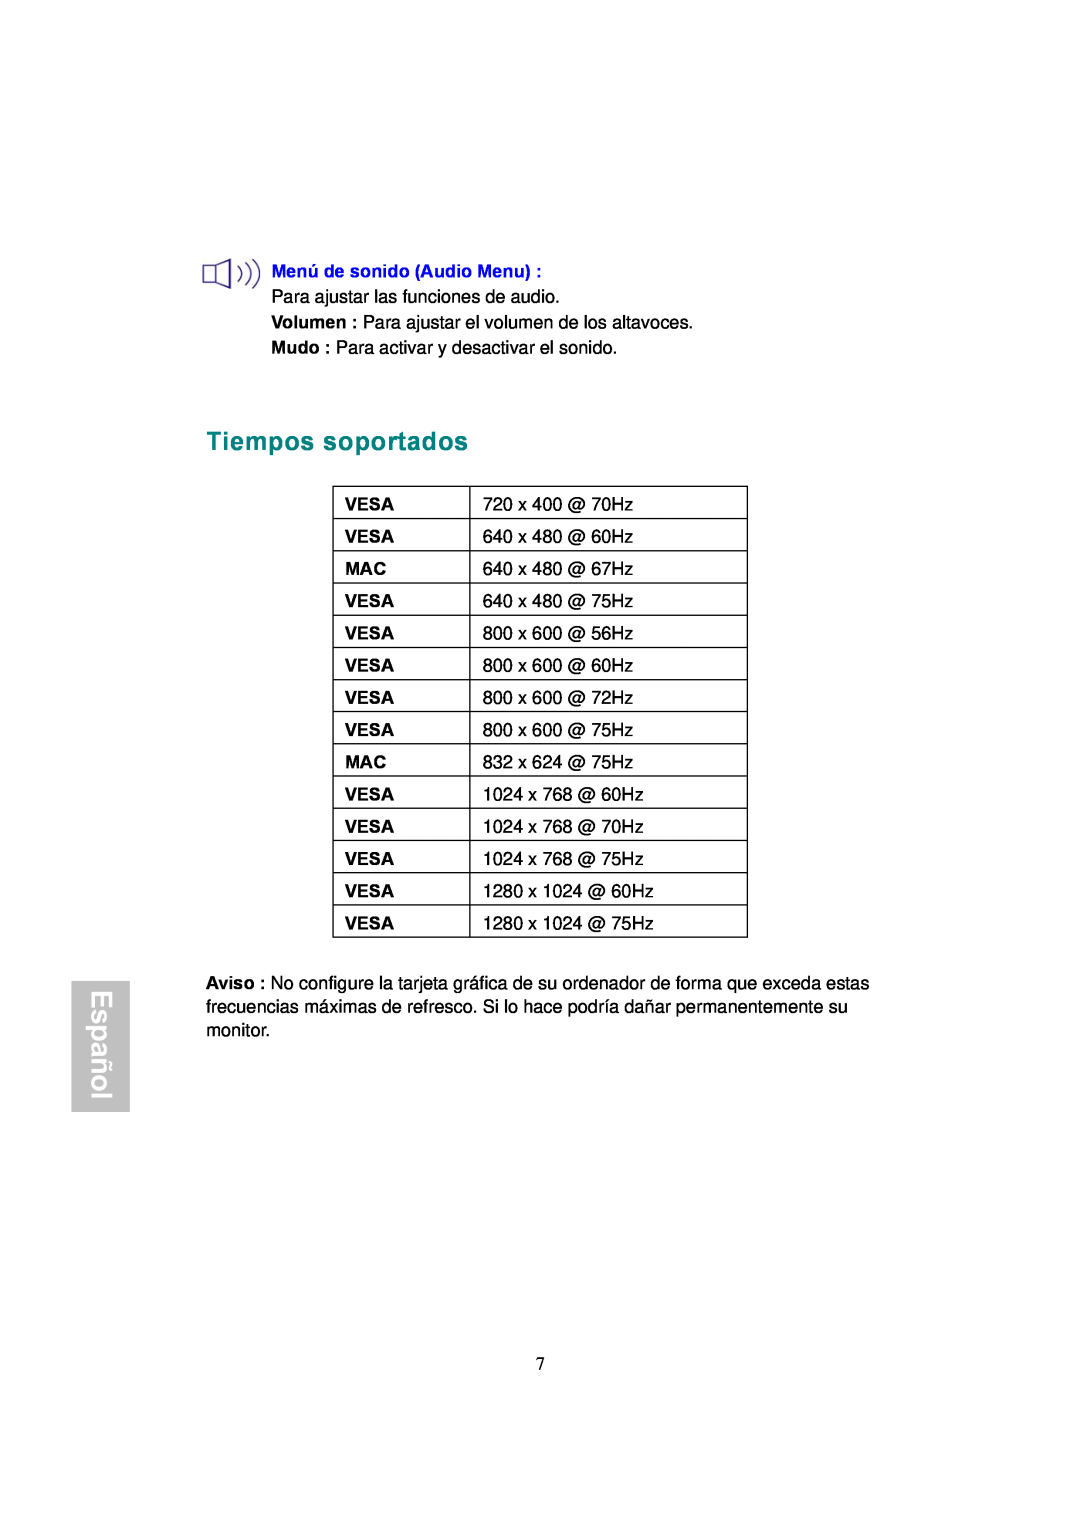 AOC 177Sa-1 manual Tiempos soportados, Español, Menú de sonido Audio Menu 